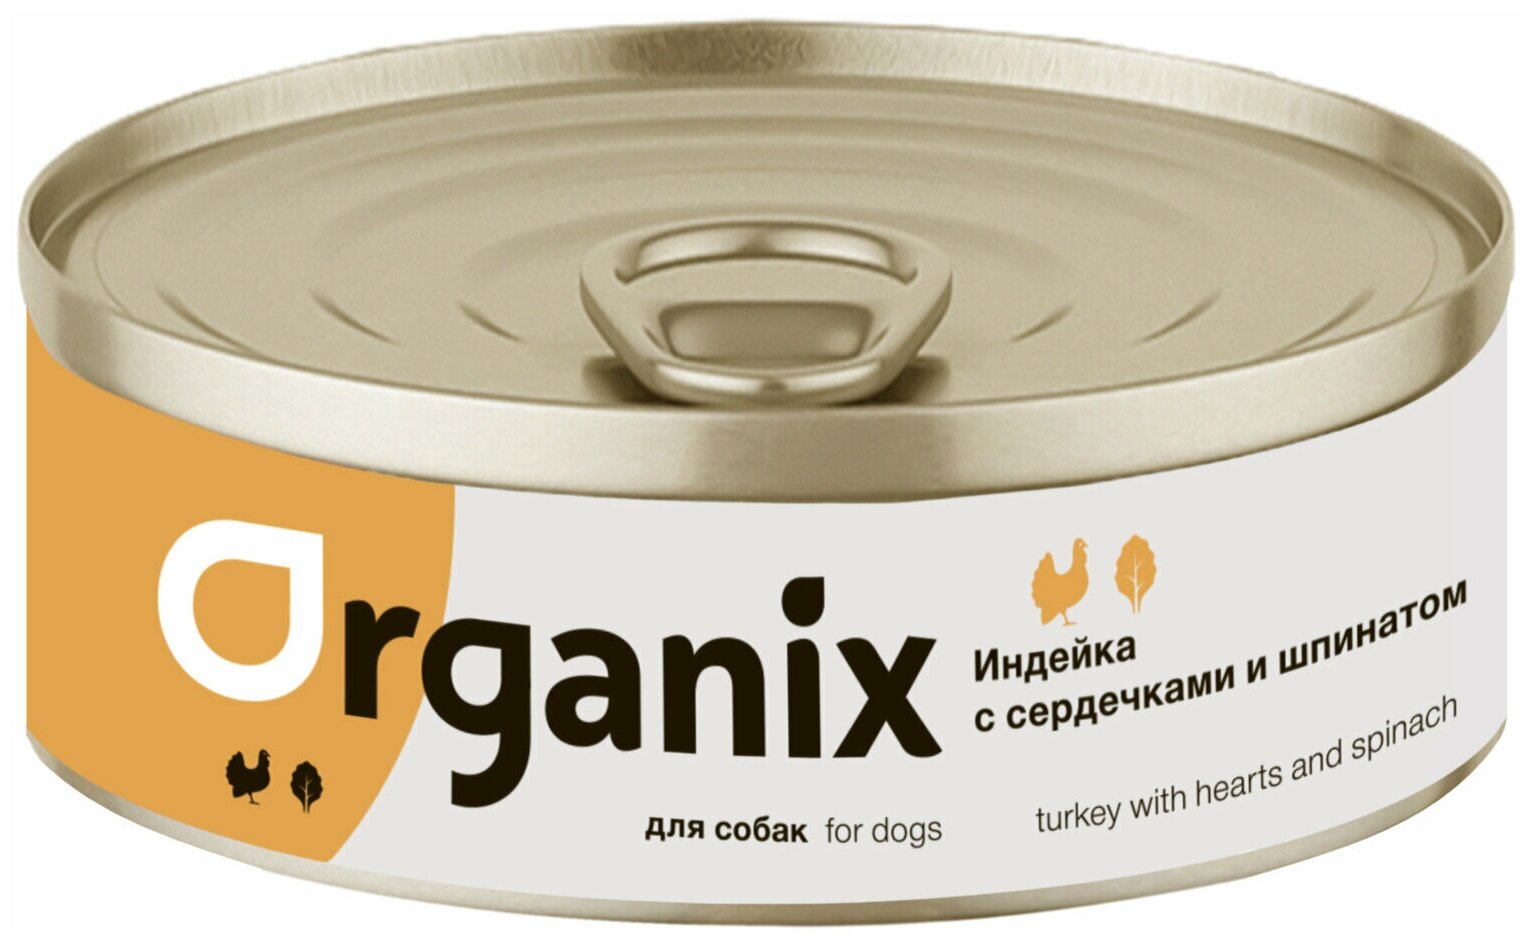 Organix консервы Консервы для собак Индейка с сердечками и шпинатом 22ел16, 0,400 кг